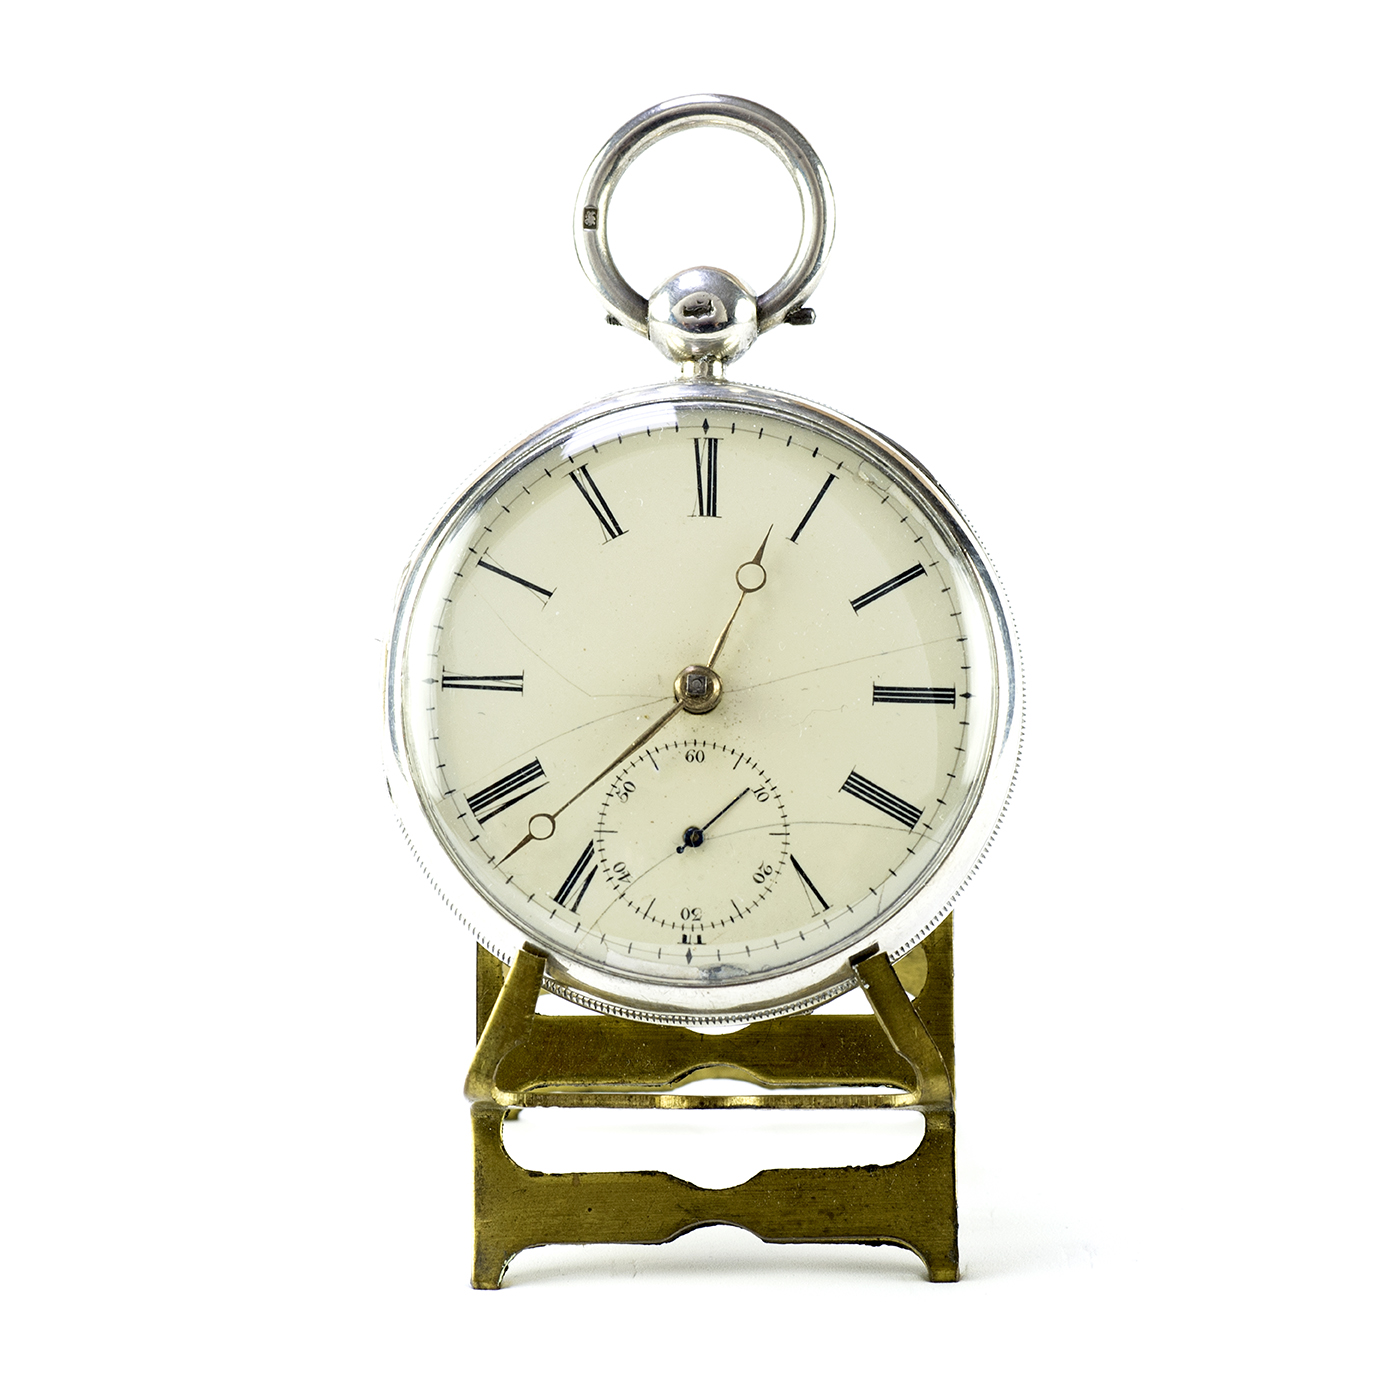 E.K. and Company. Reloj de Bolsillo, lepine, Half Fusee (Semicatalino). Chester, 1844.